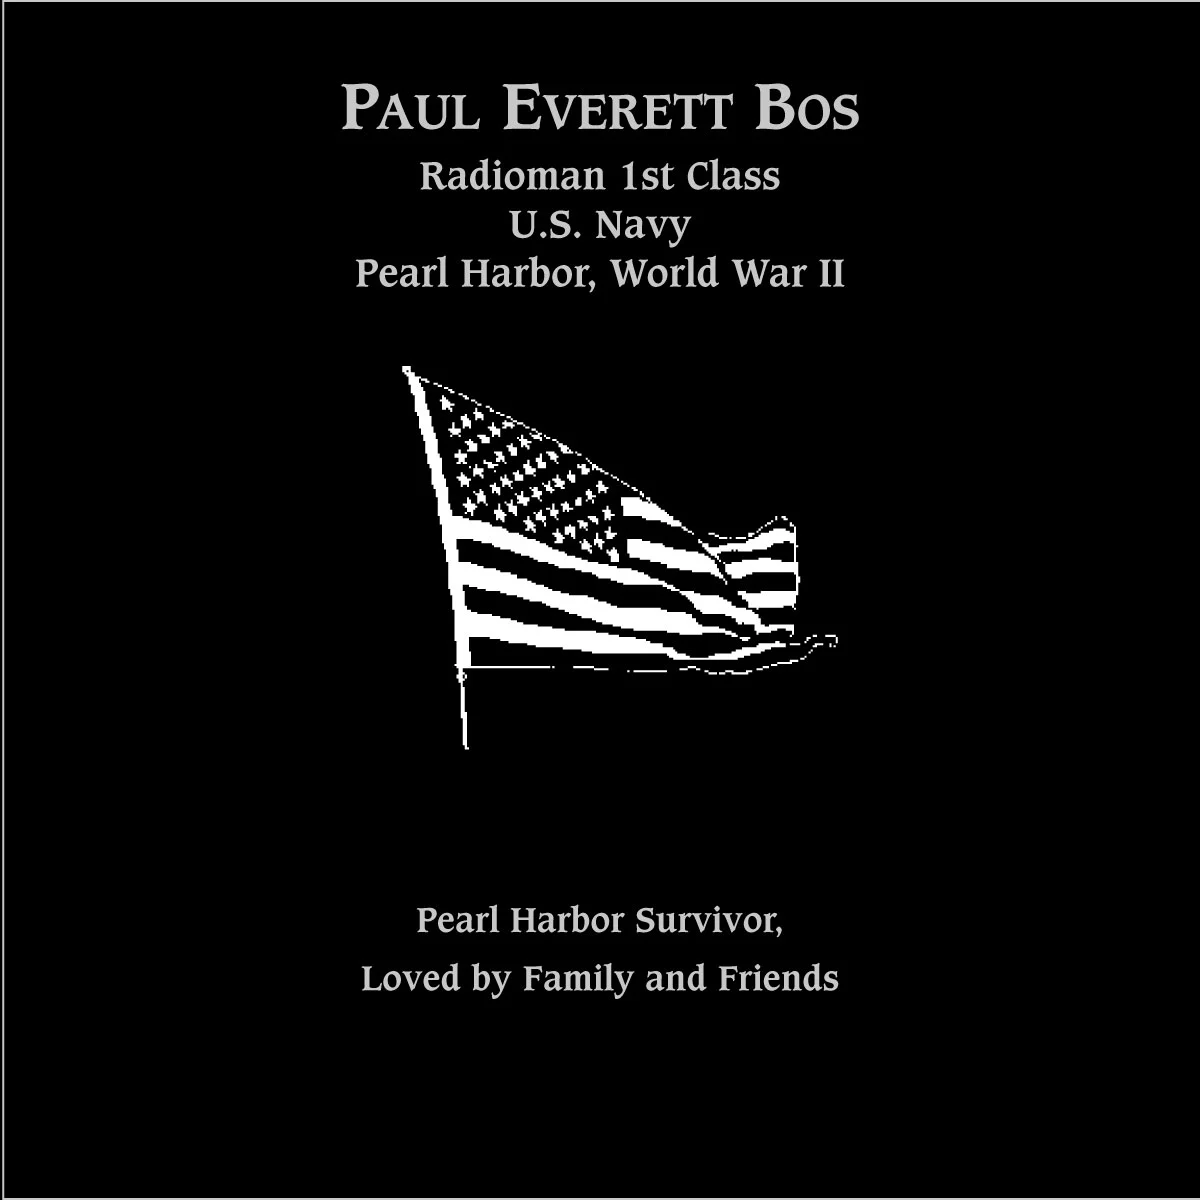 Paul Everett Bos